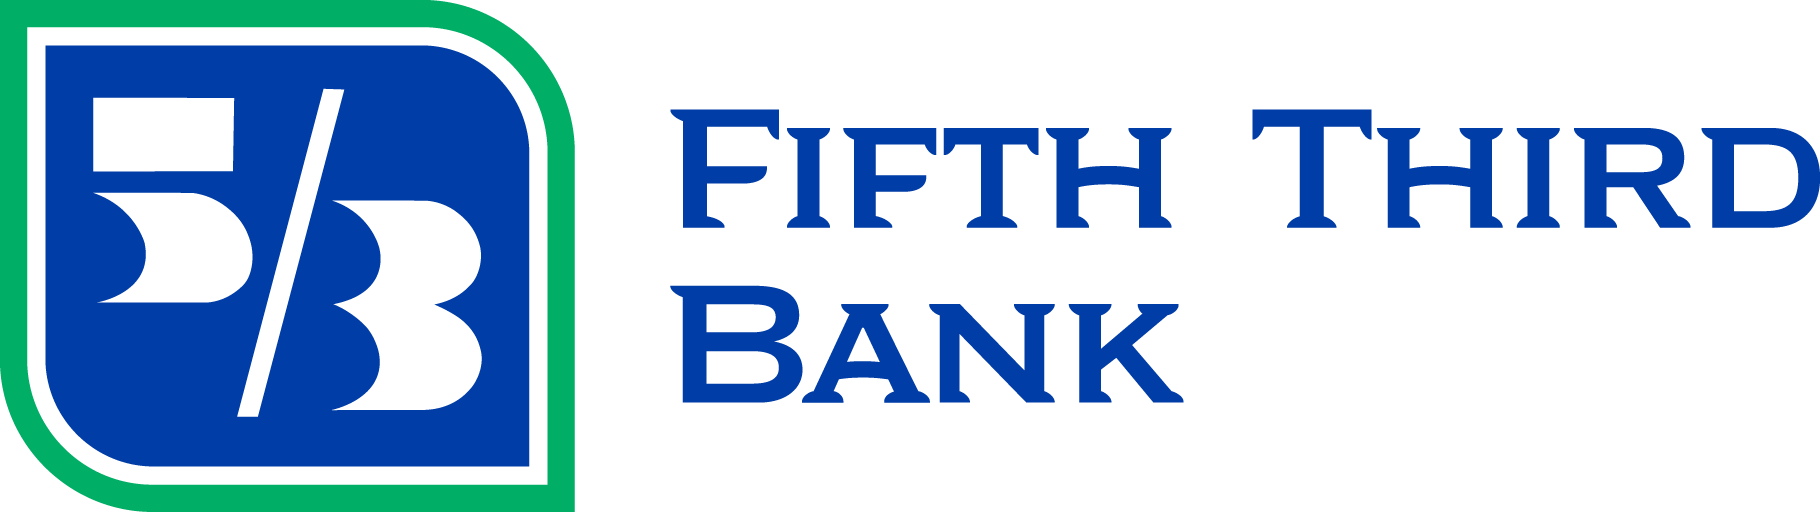 Fifth Third Bank - North Muskegon